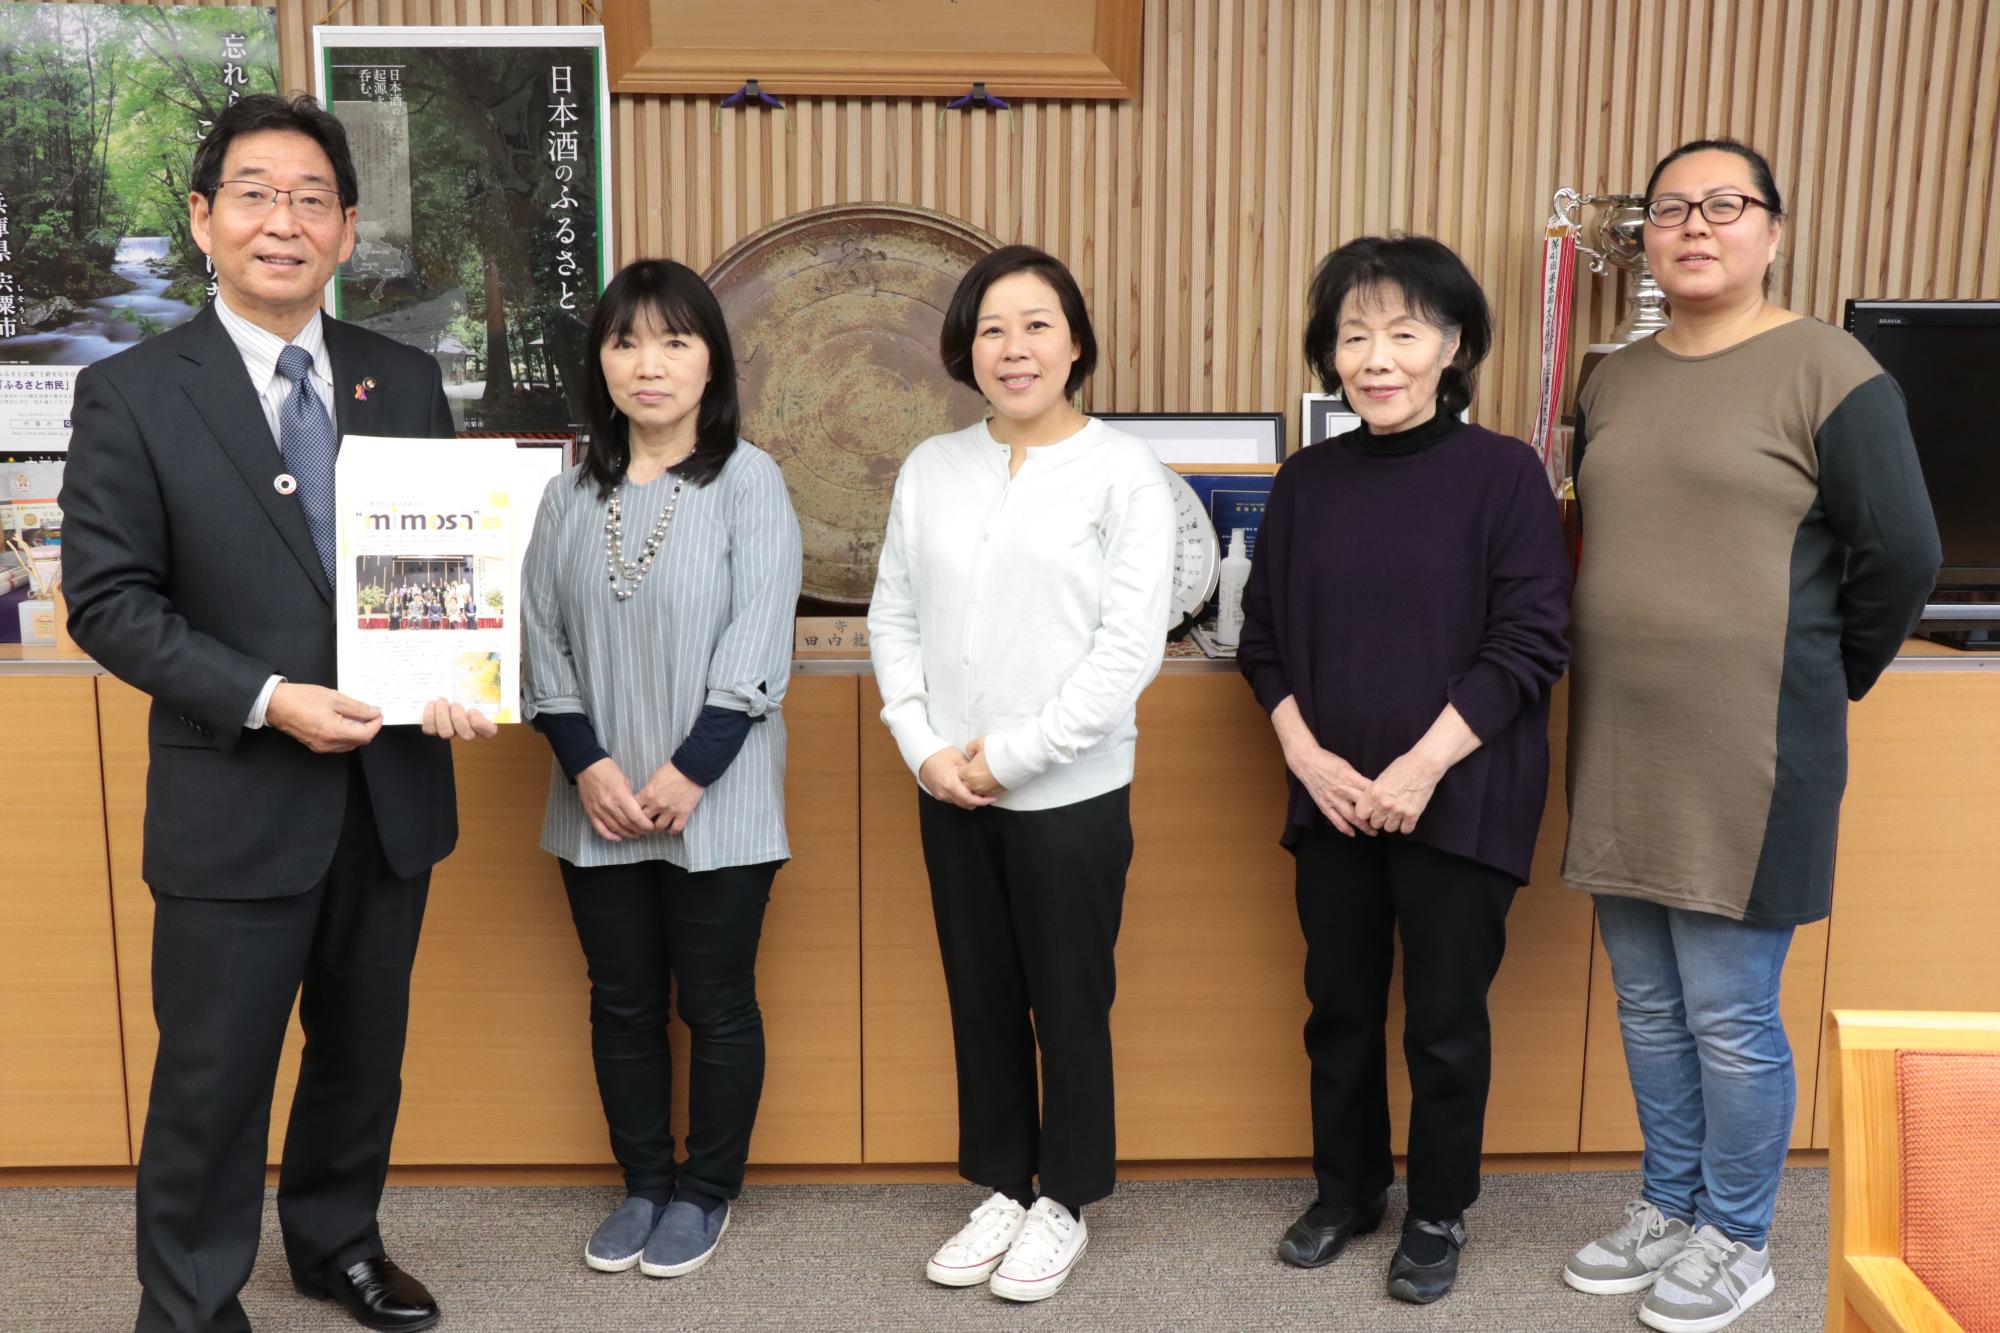 宍粟市役所の市長室でミモザのグループ活動誌を手にする市長とメンバー4人が横一列に並んでいる写真